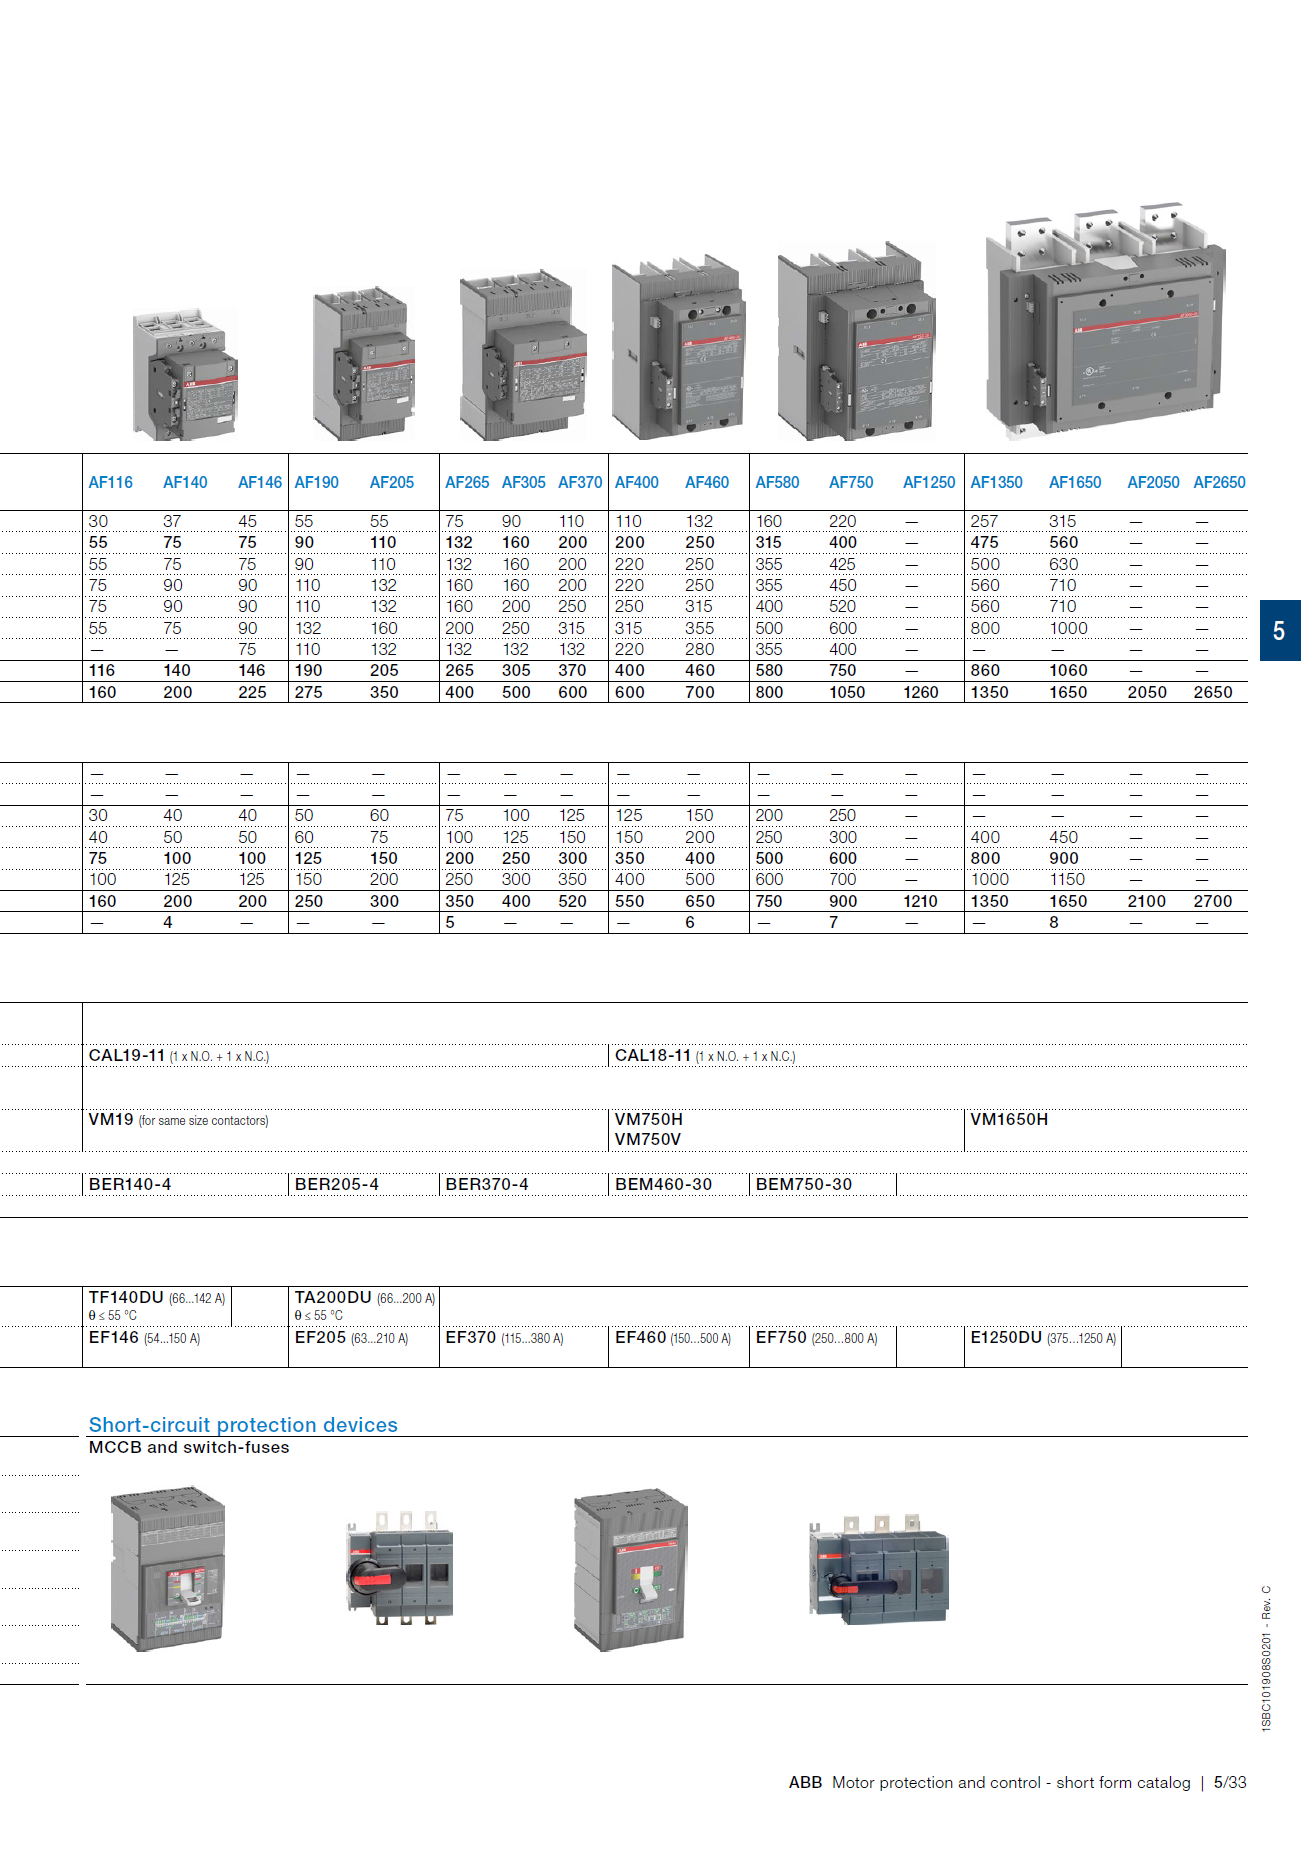 ABB Magnetic Contactors AF Series : AF09-30-01